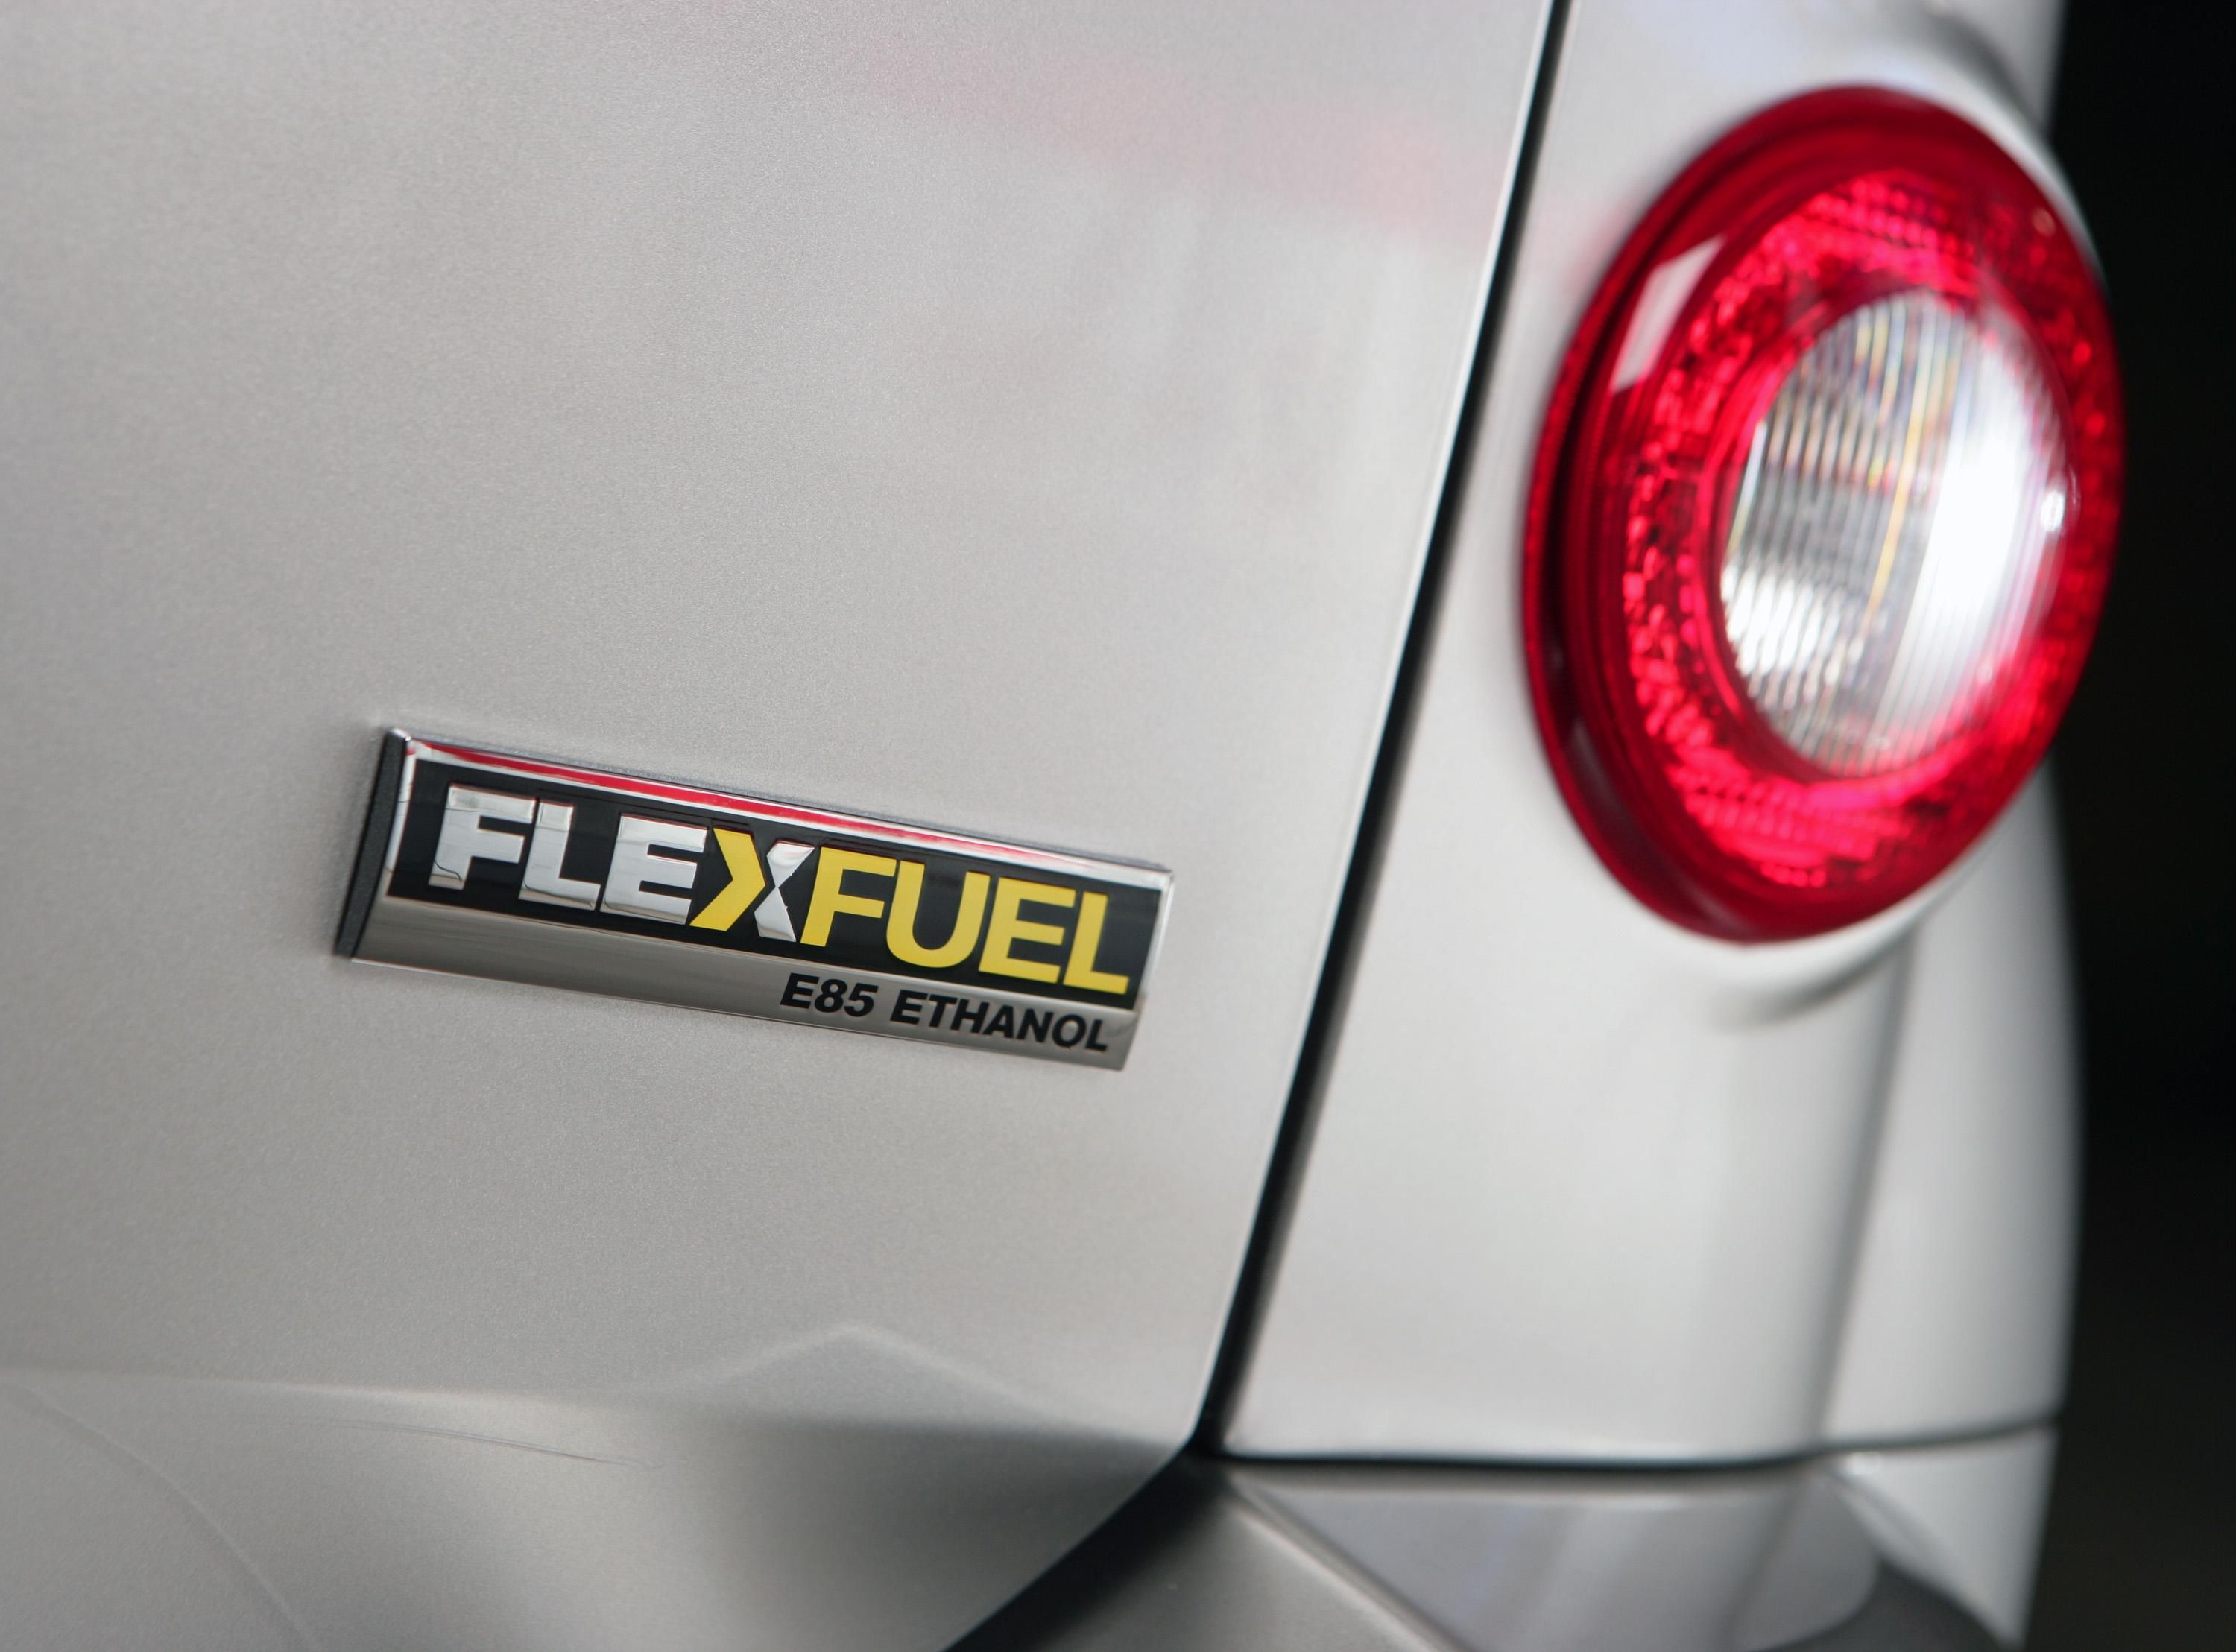 2009 Chevrolet HHR E85 FlexFuel 